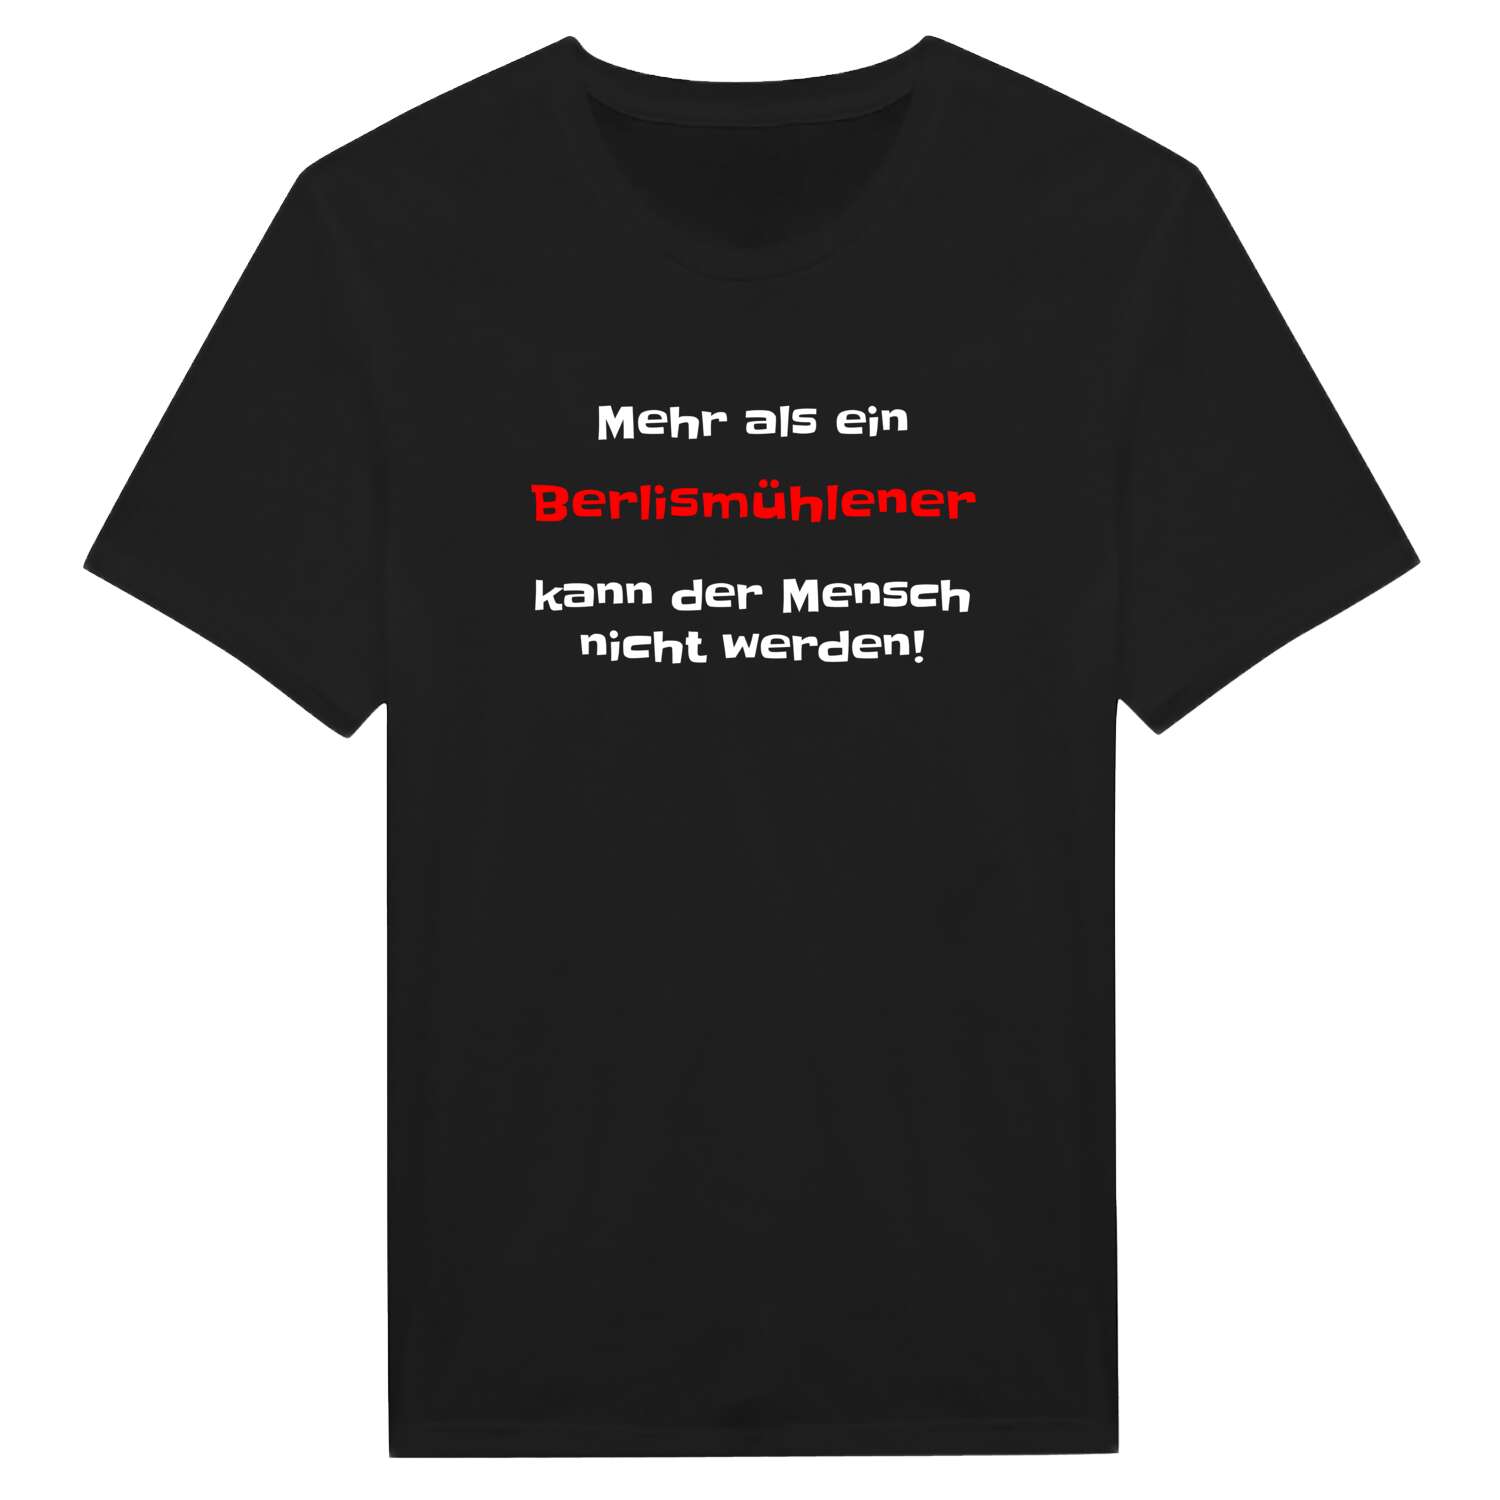 Berlismühle T-Shirt »Mehr als ein«